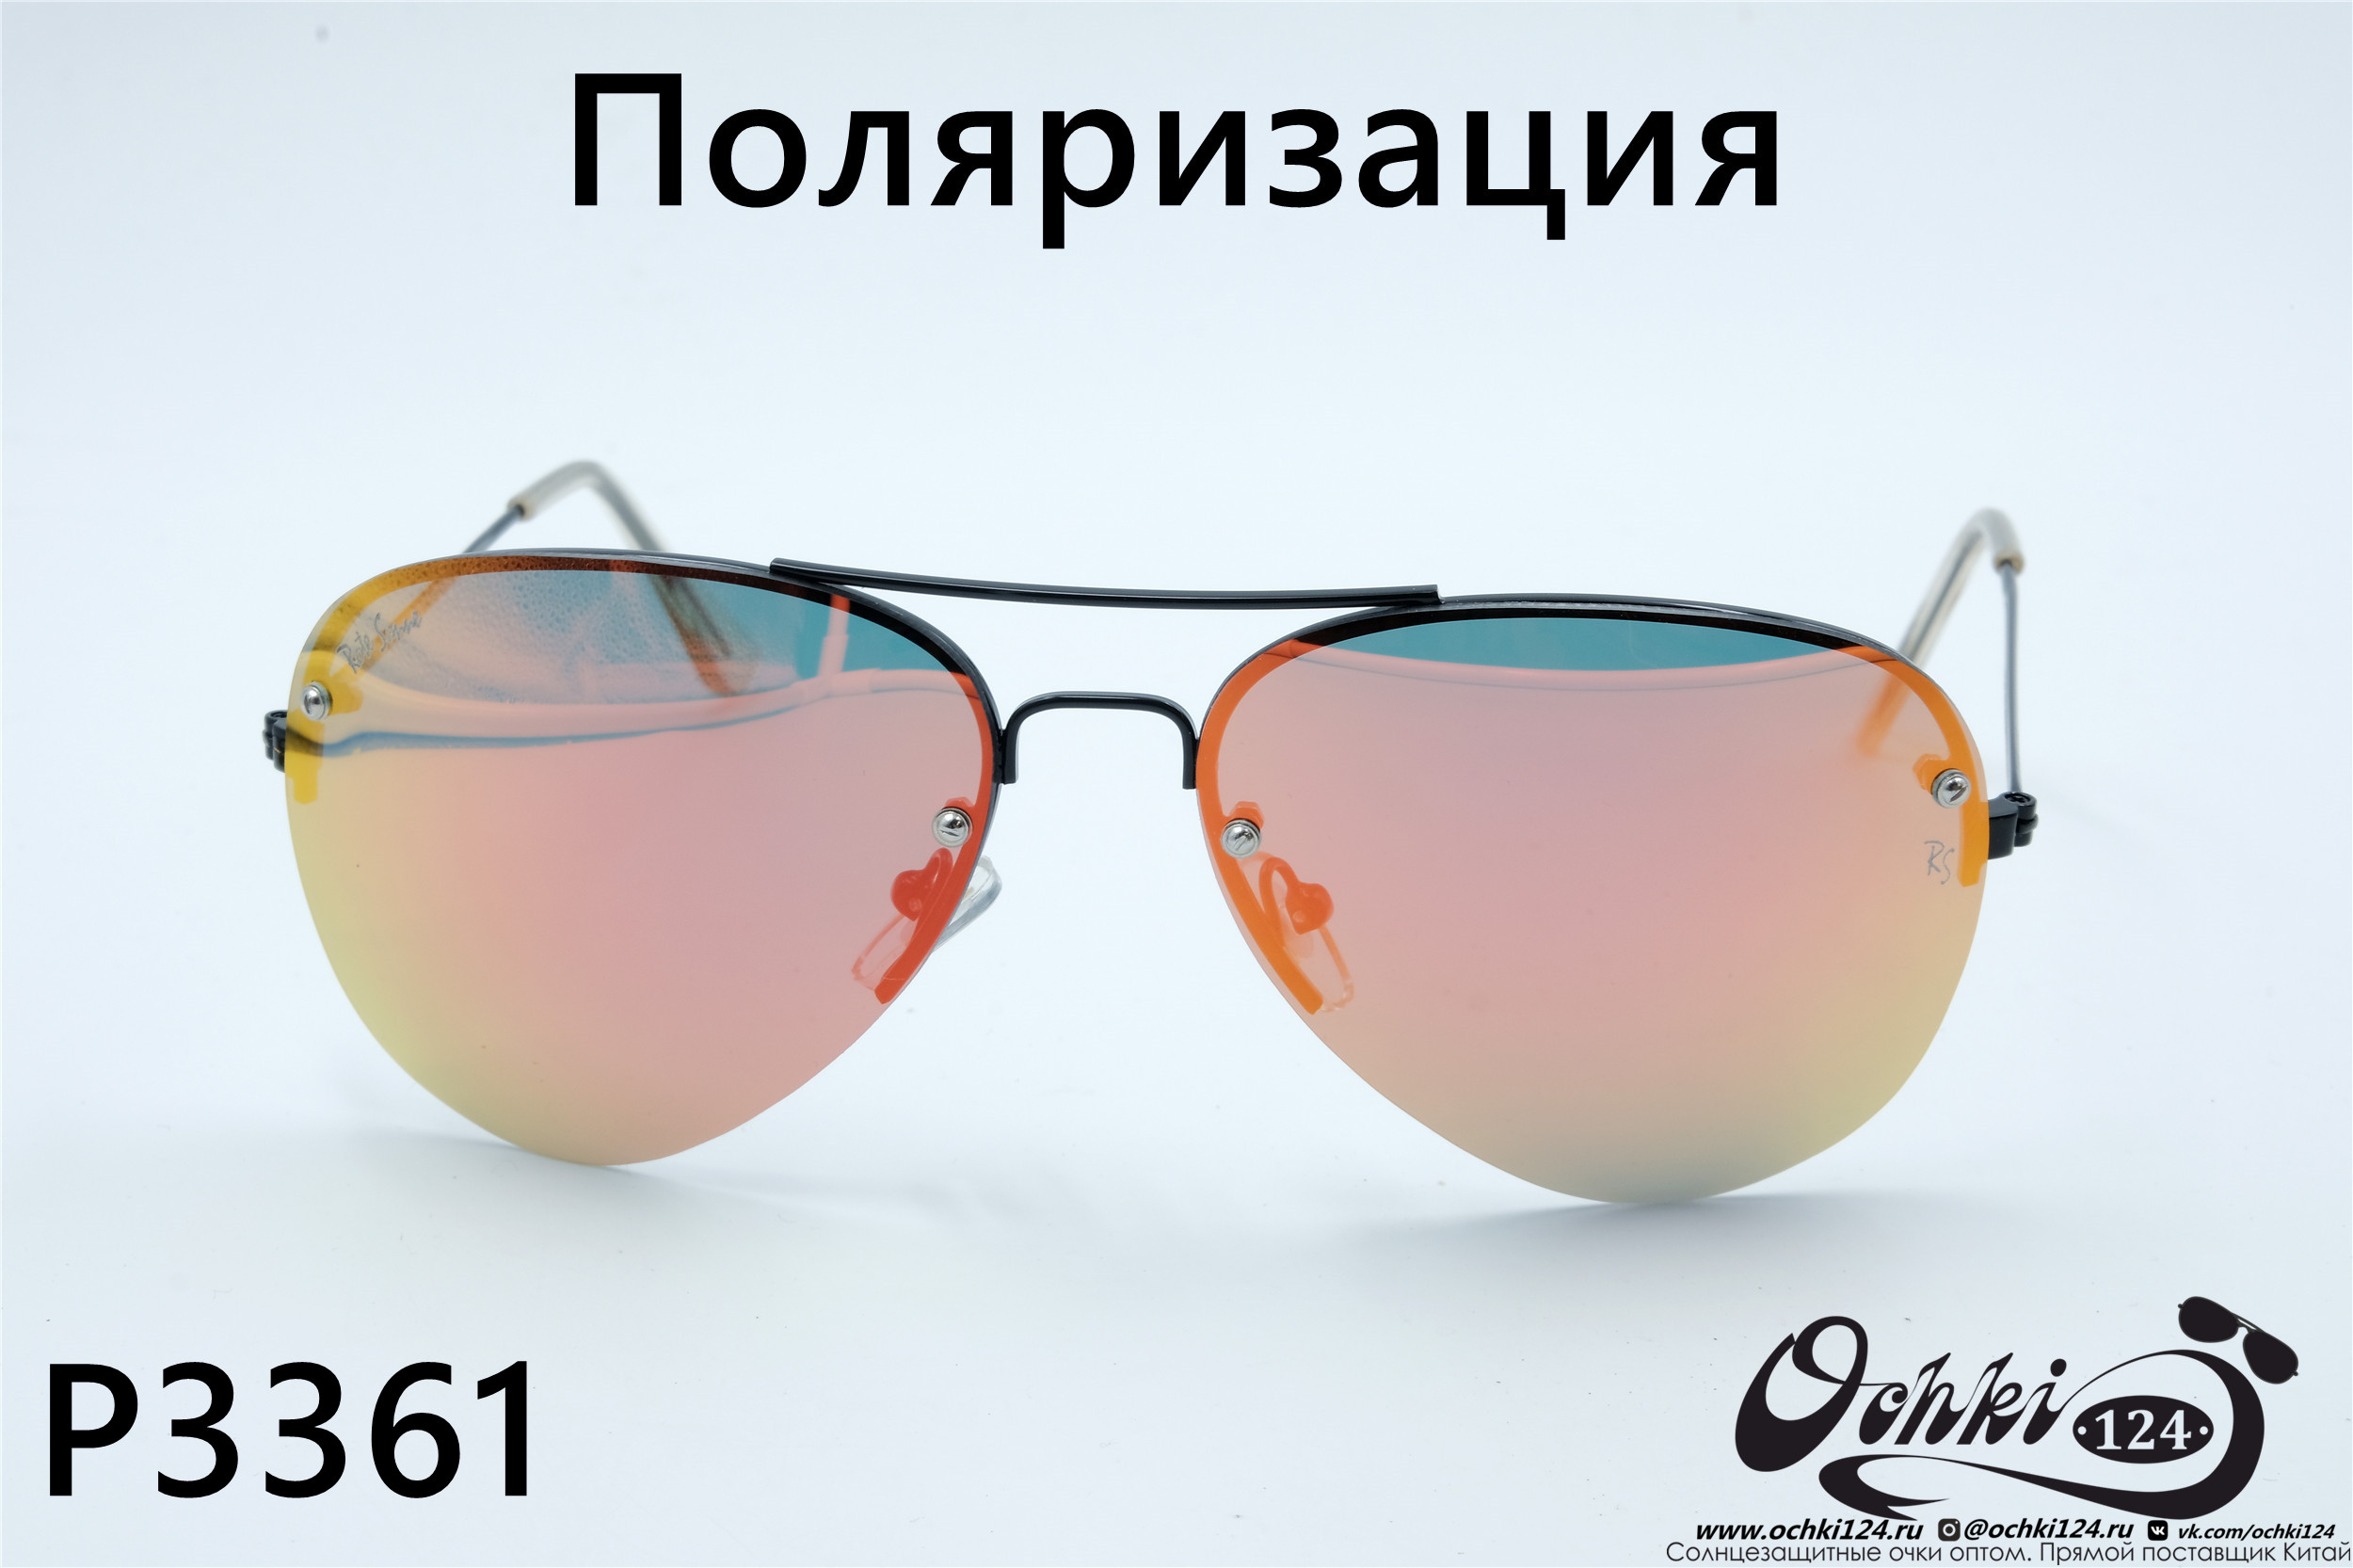  Солнцезащитные очки картинка 2022 Унисекс Поляризованные Авиаторы Rote Sonne P3361-4 